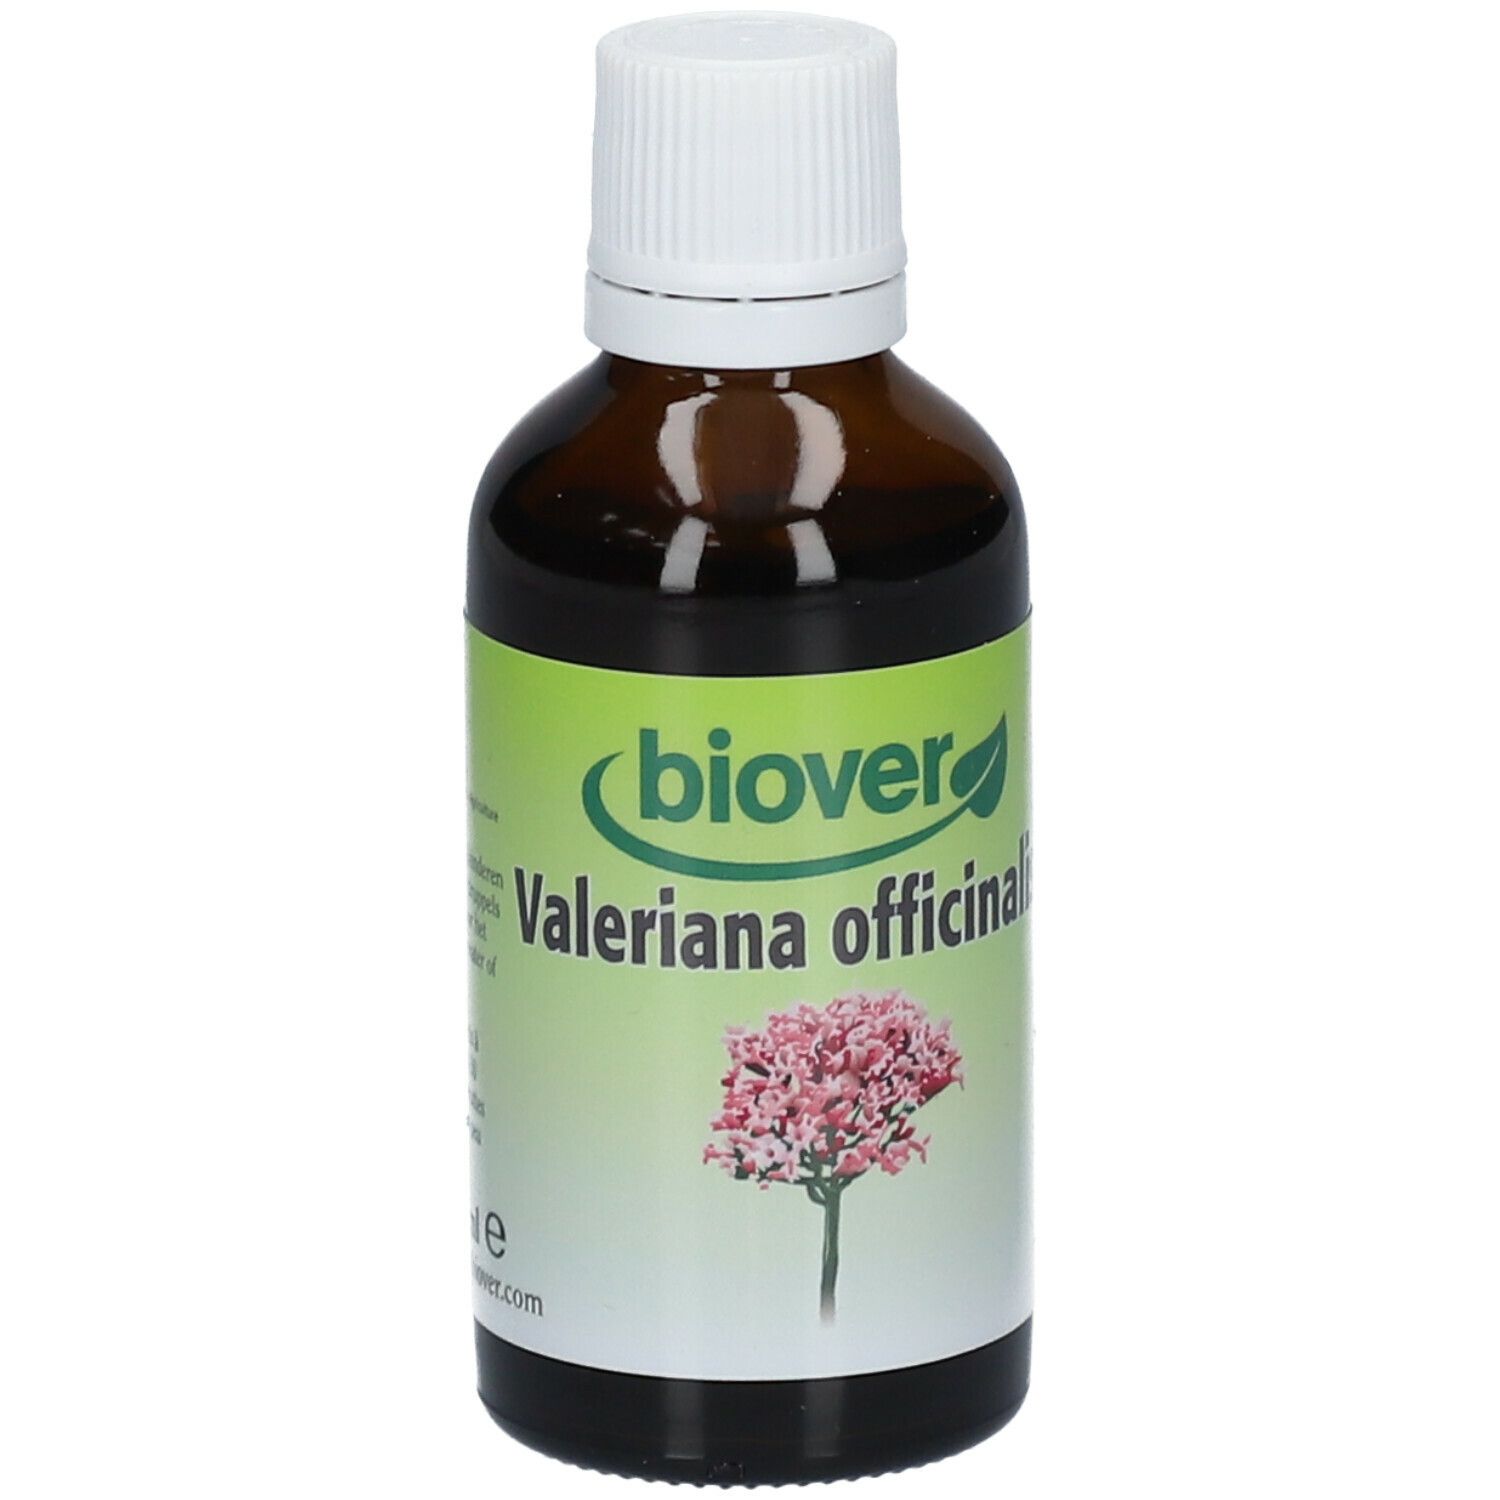 Biover Valeriana officinalis teinture